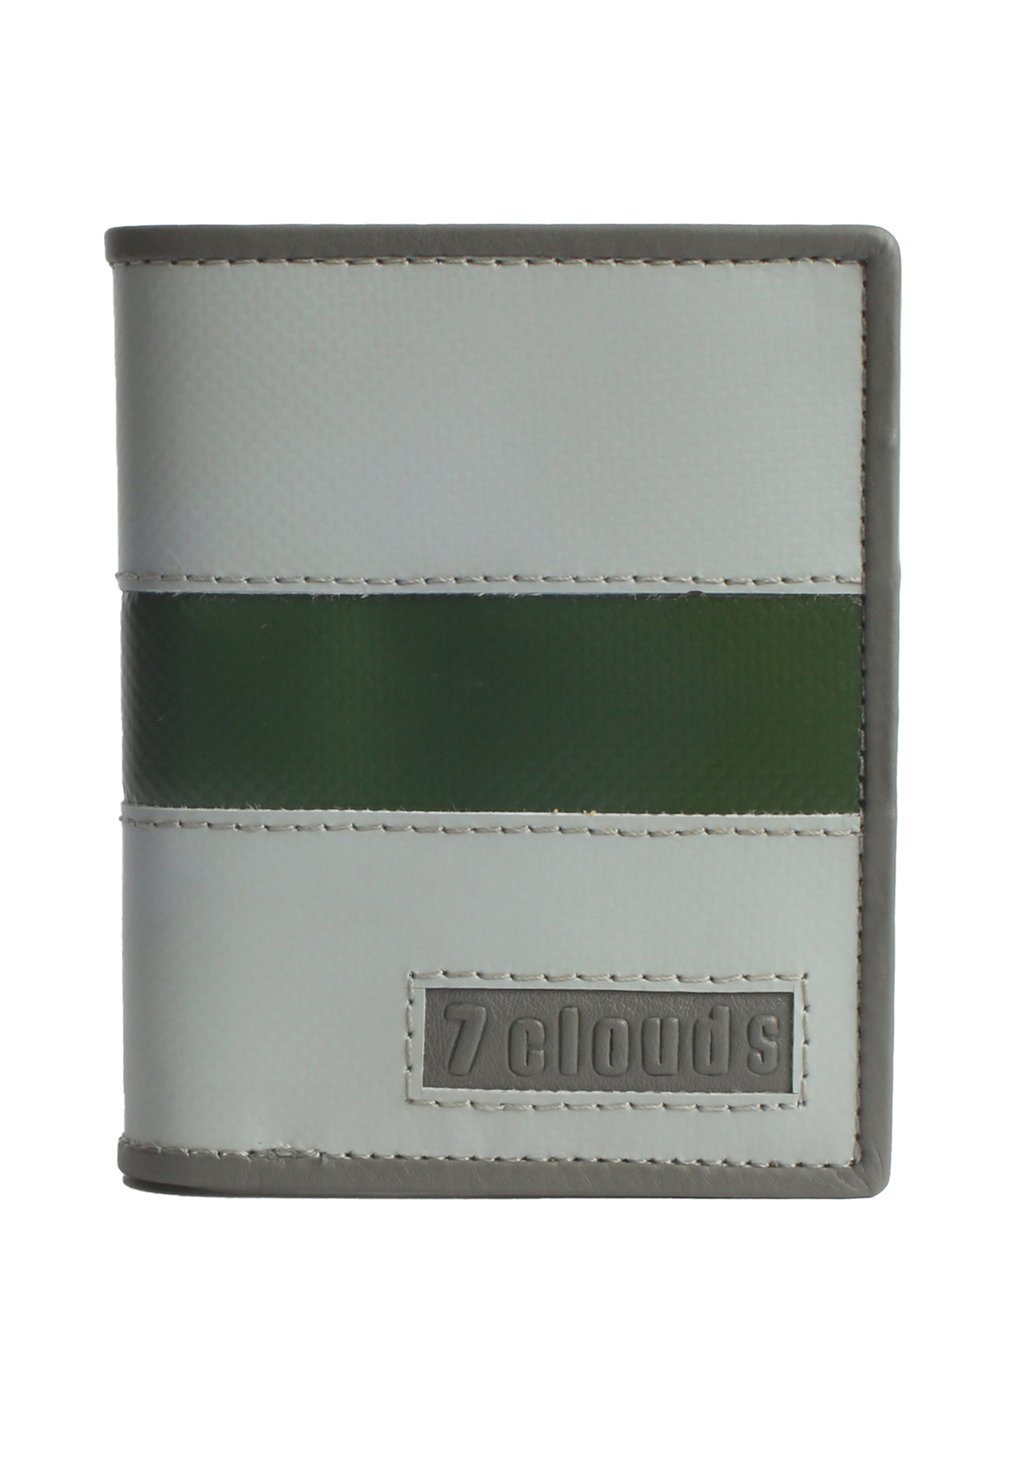 Кошелек RFID-KERON 71 7Clouds, цвет grey junglegreen grey